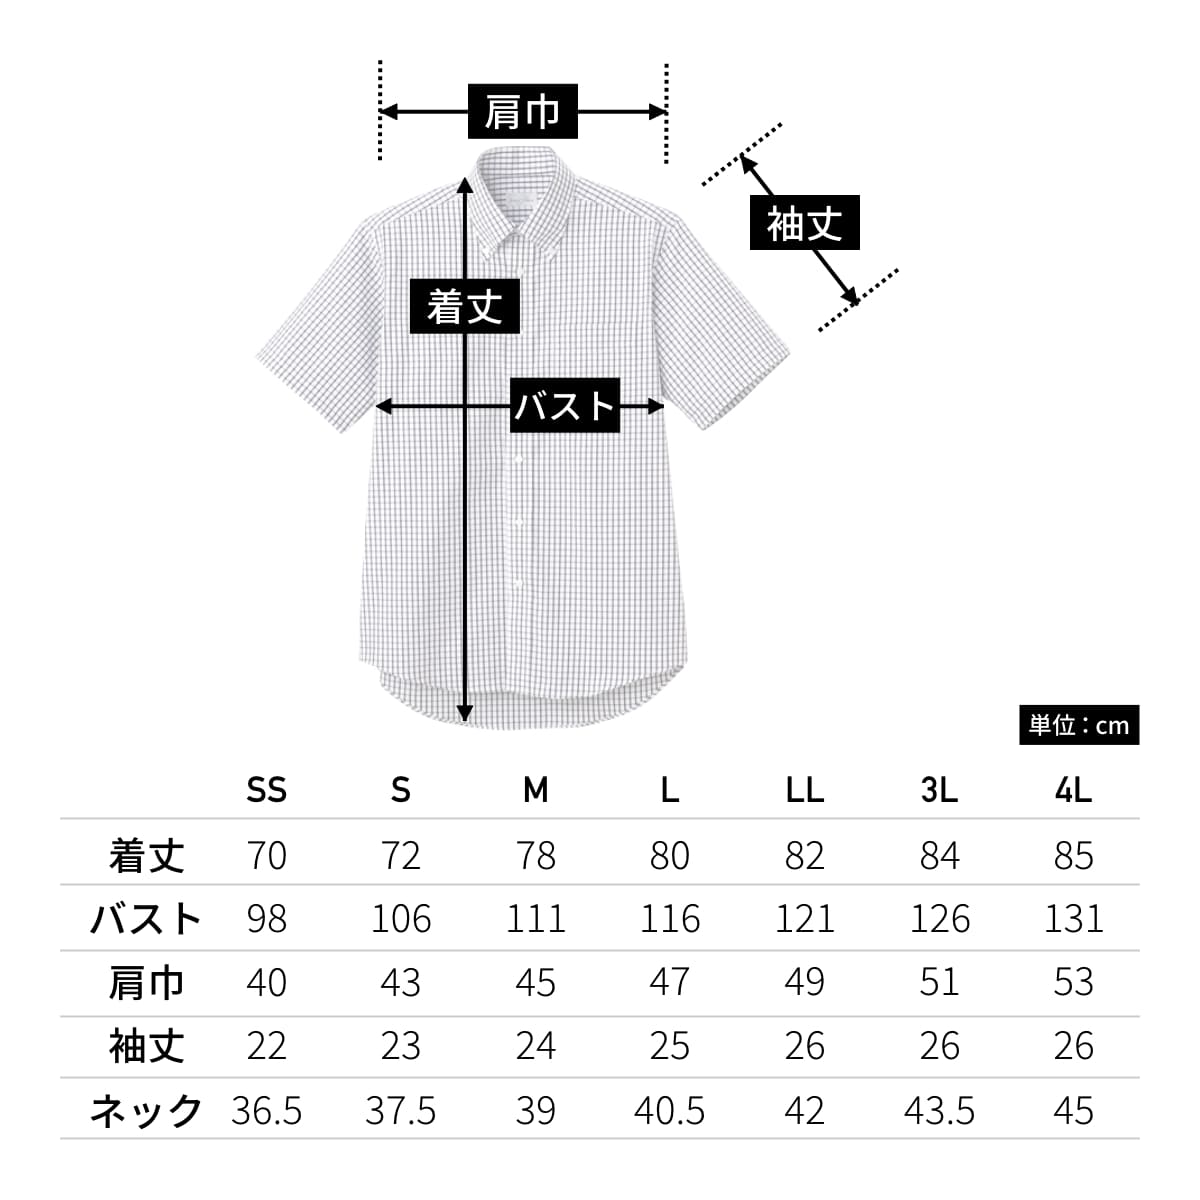 ユニセックスシャツ（半袖） | メンズ | 1枚 | FB4507U | グリーン